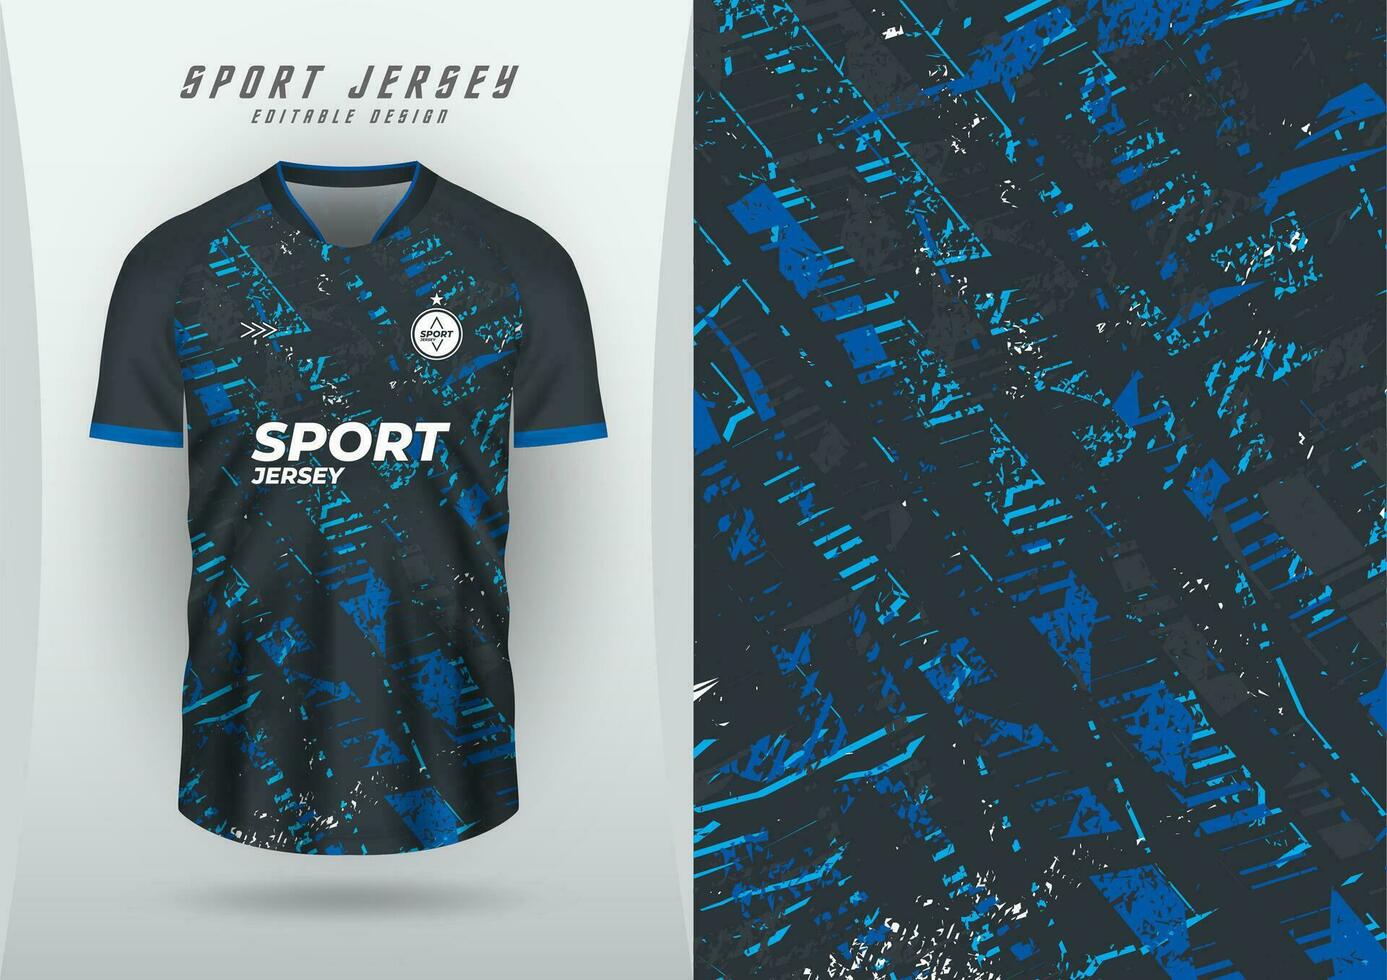 achtergrond voor sport- Jersey, voetbal Jersey, rennen Jersey, racing Jersey, patroon, blauw grunge, zwart tonen. vector